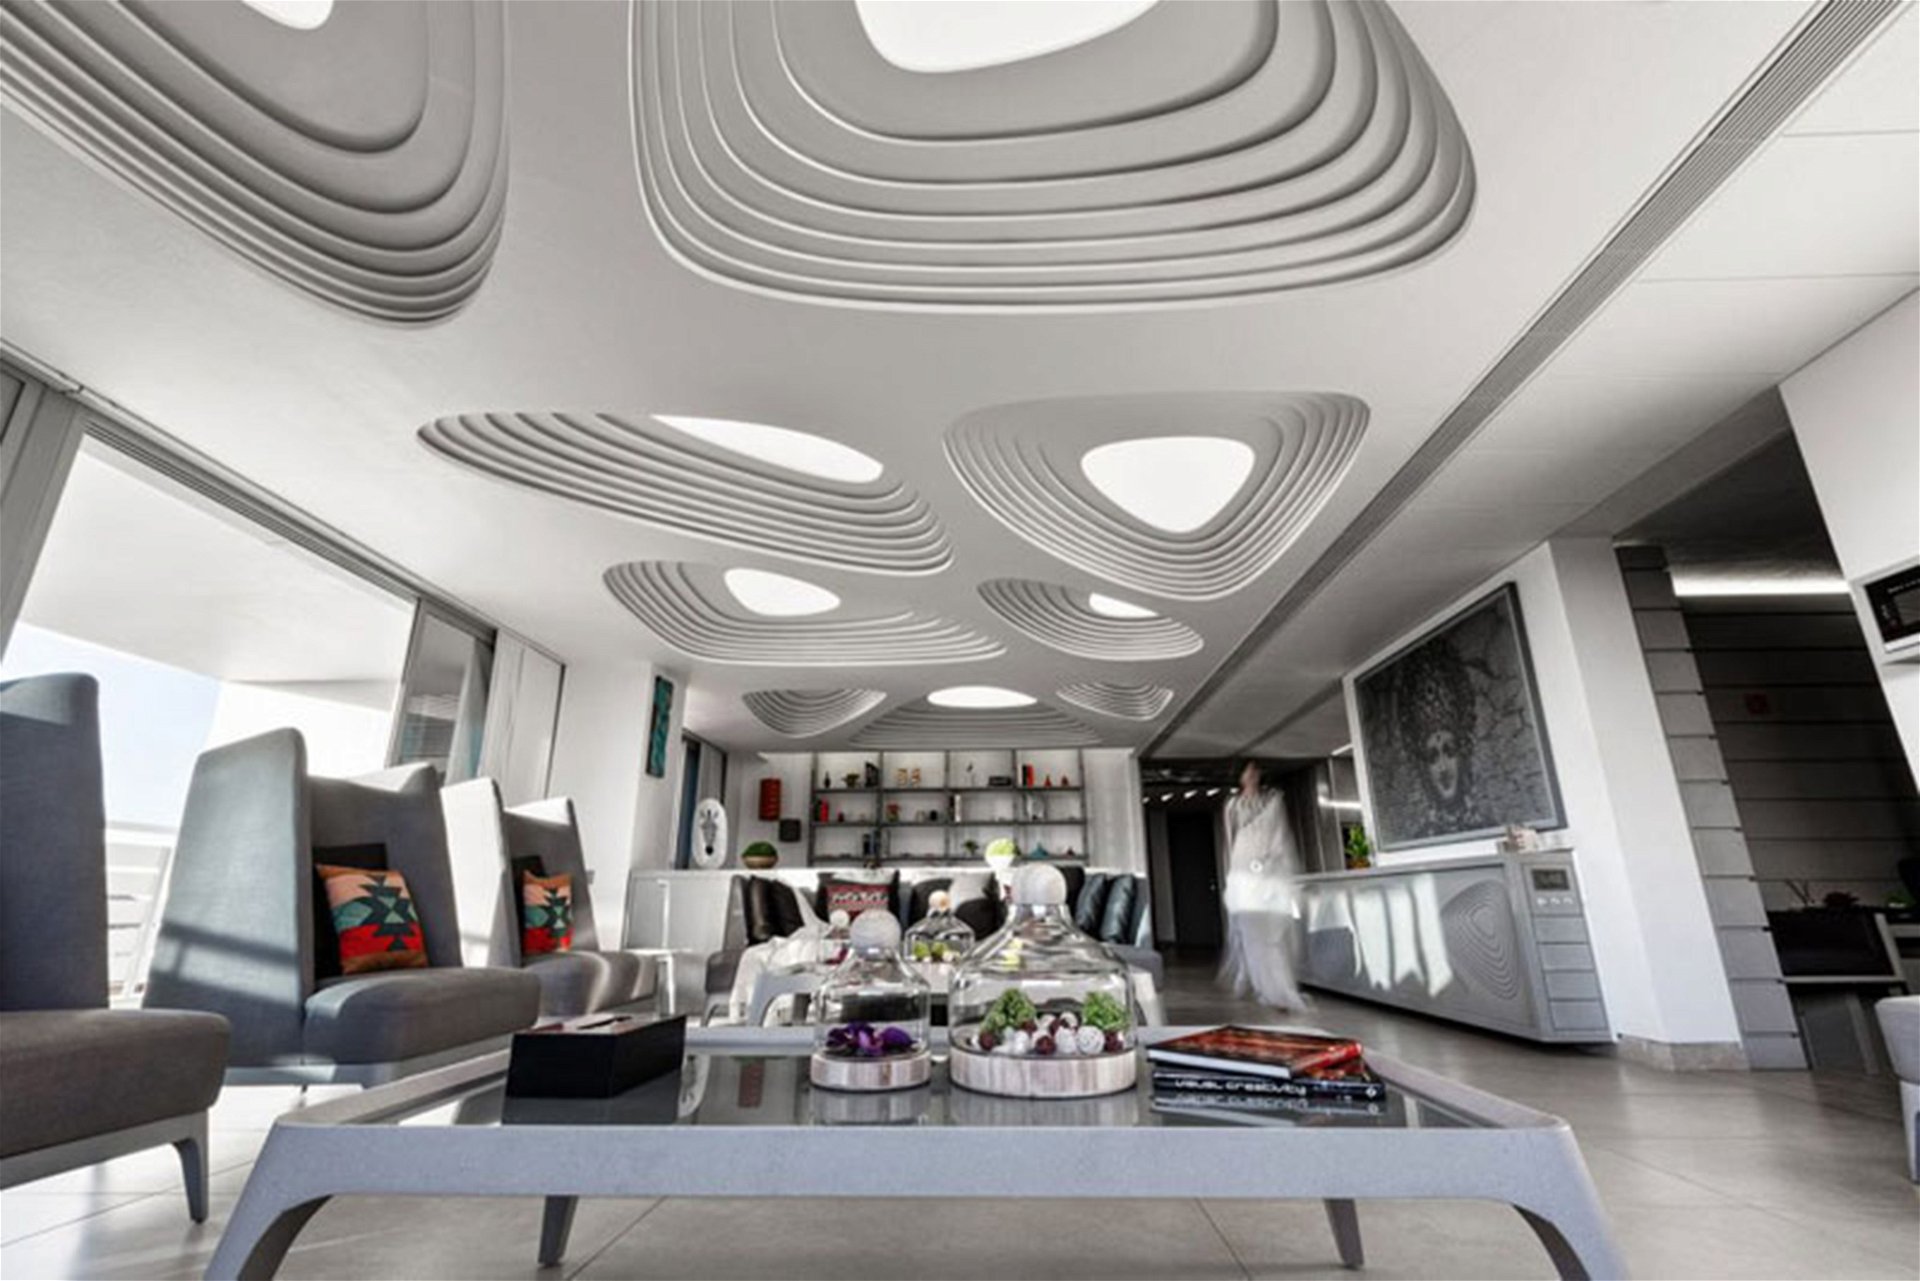 Die futuristische Decke dieses Penthouses wurde von Apical Reform Studio designt.